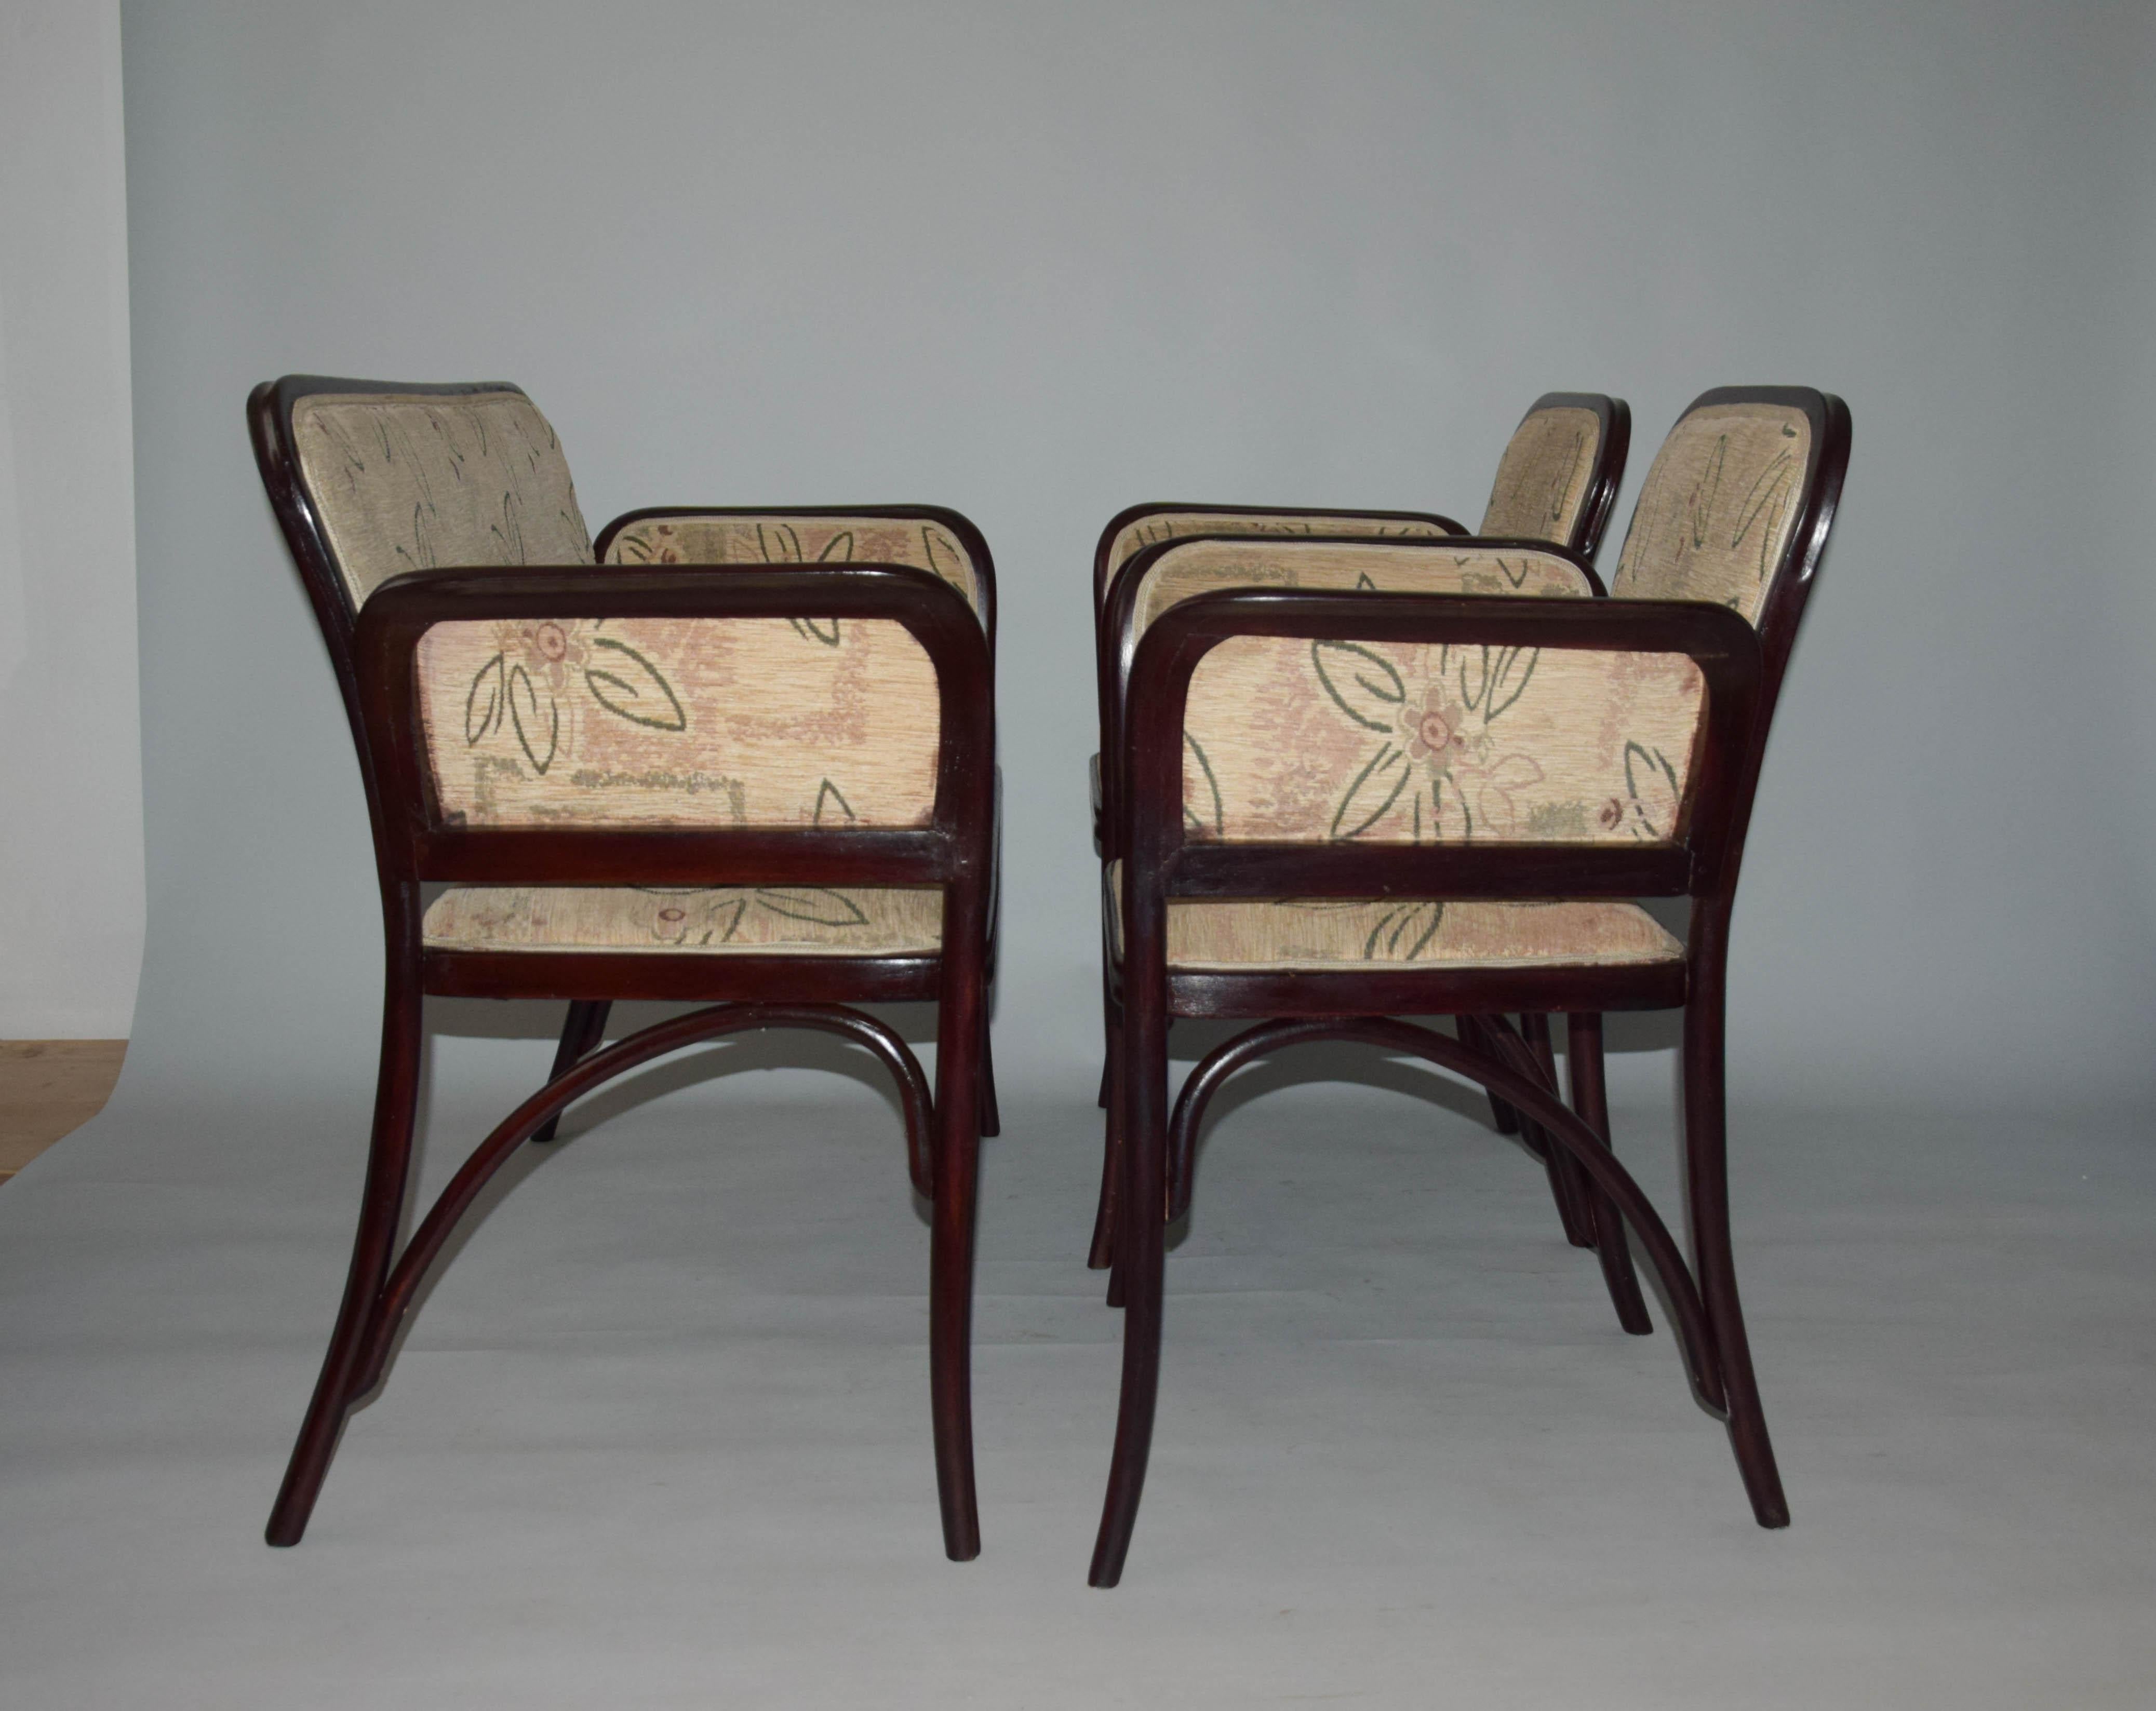 Ensemble de canapé Thonet type 6285 et deux fauteuils Thonet 6585.
Type rare conçu par Otto Wagner.
Récemment retapissé.
Finition gomme-laque.
Dimensions du fauteuil : H : 90cm, P : 58cm, L : 64cm.